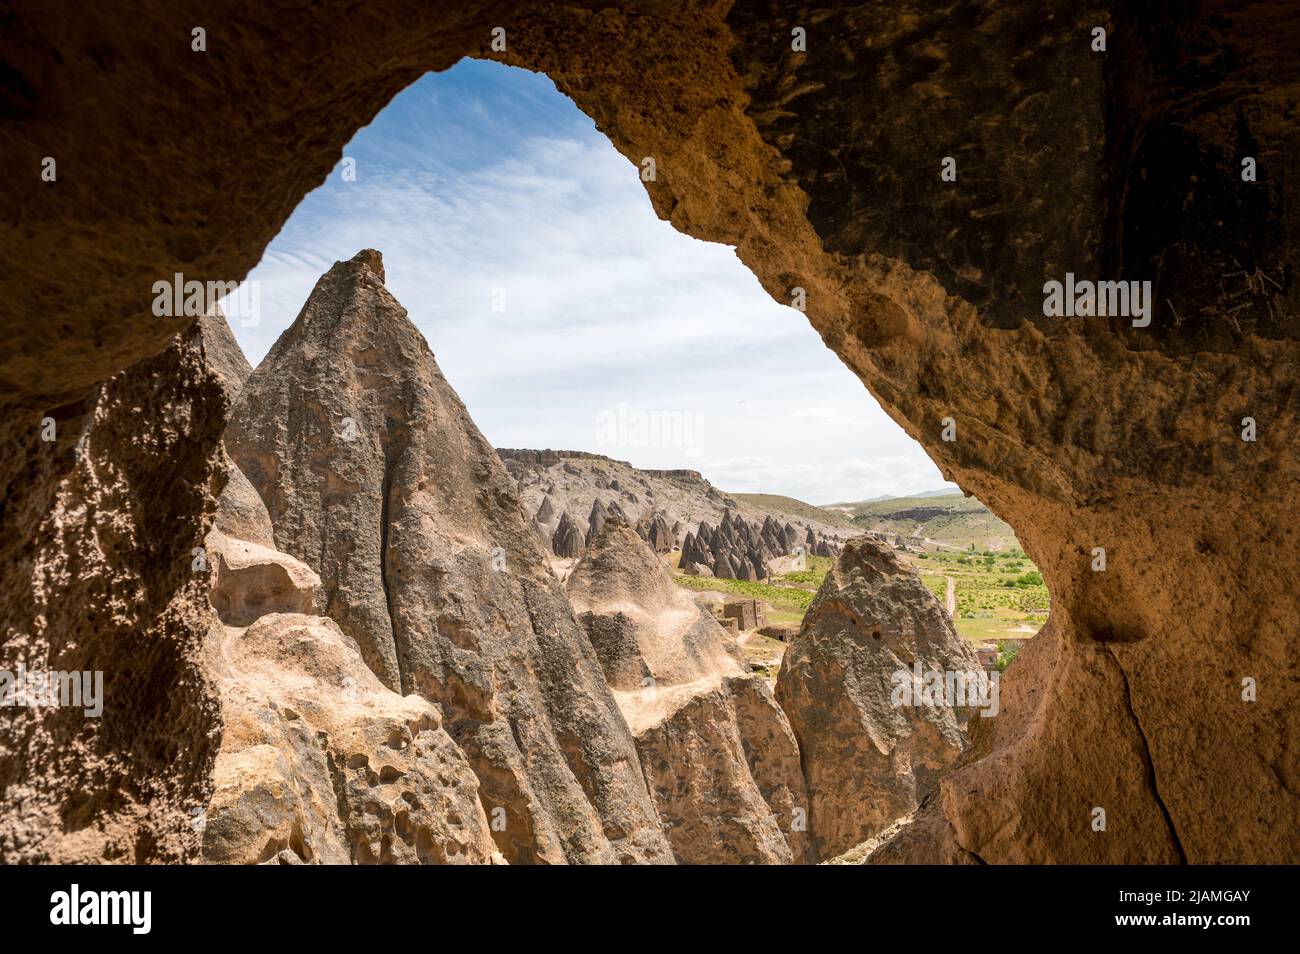 Vista desde casa cueva en el Valle de Ilhara con chimenea de hadas Foto de stock